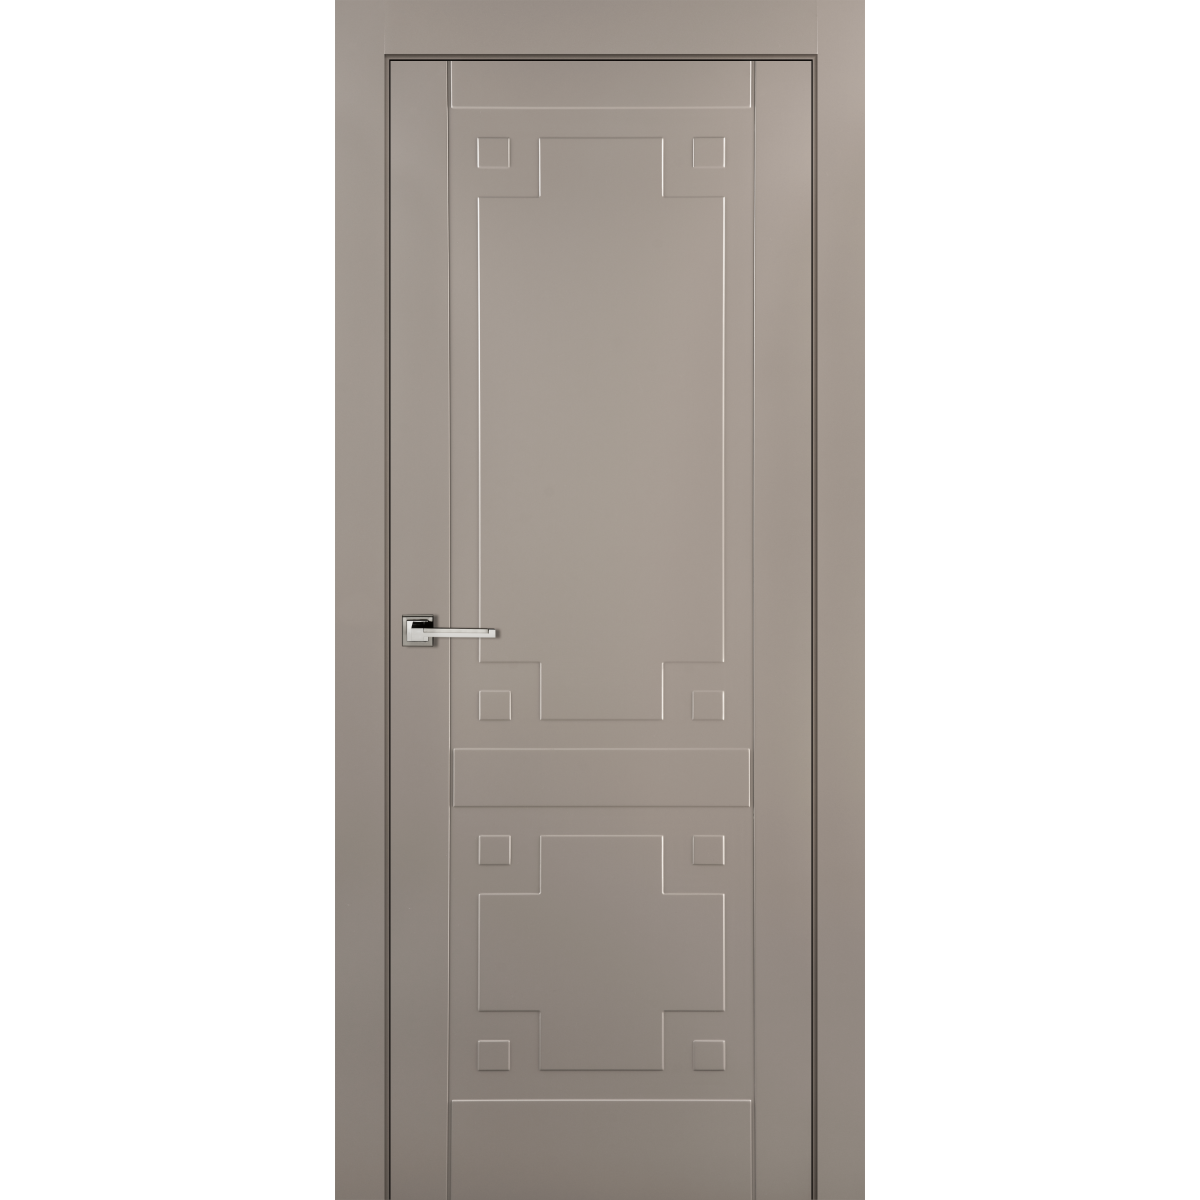 Дверь межкомнатная глухая с замком в комплекте Лира 70x200 см эмаль цвет мускат